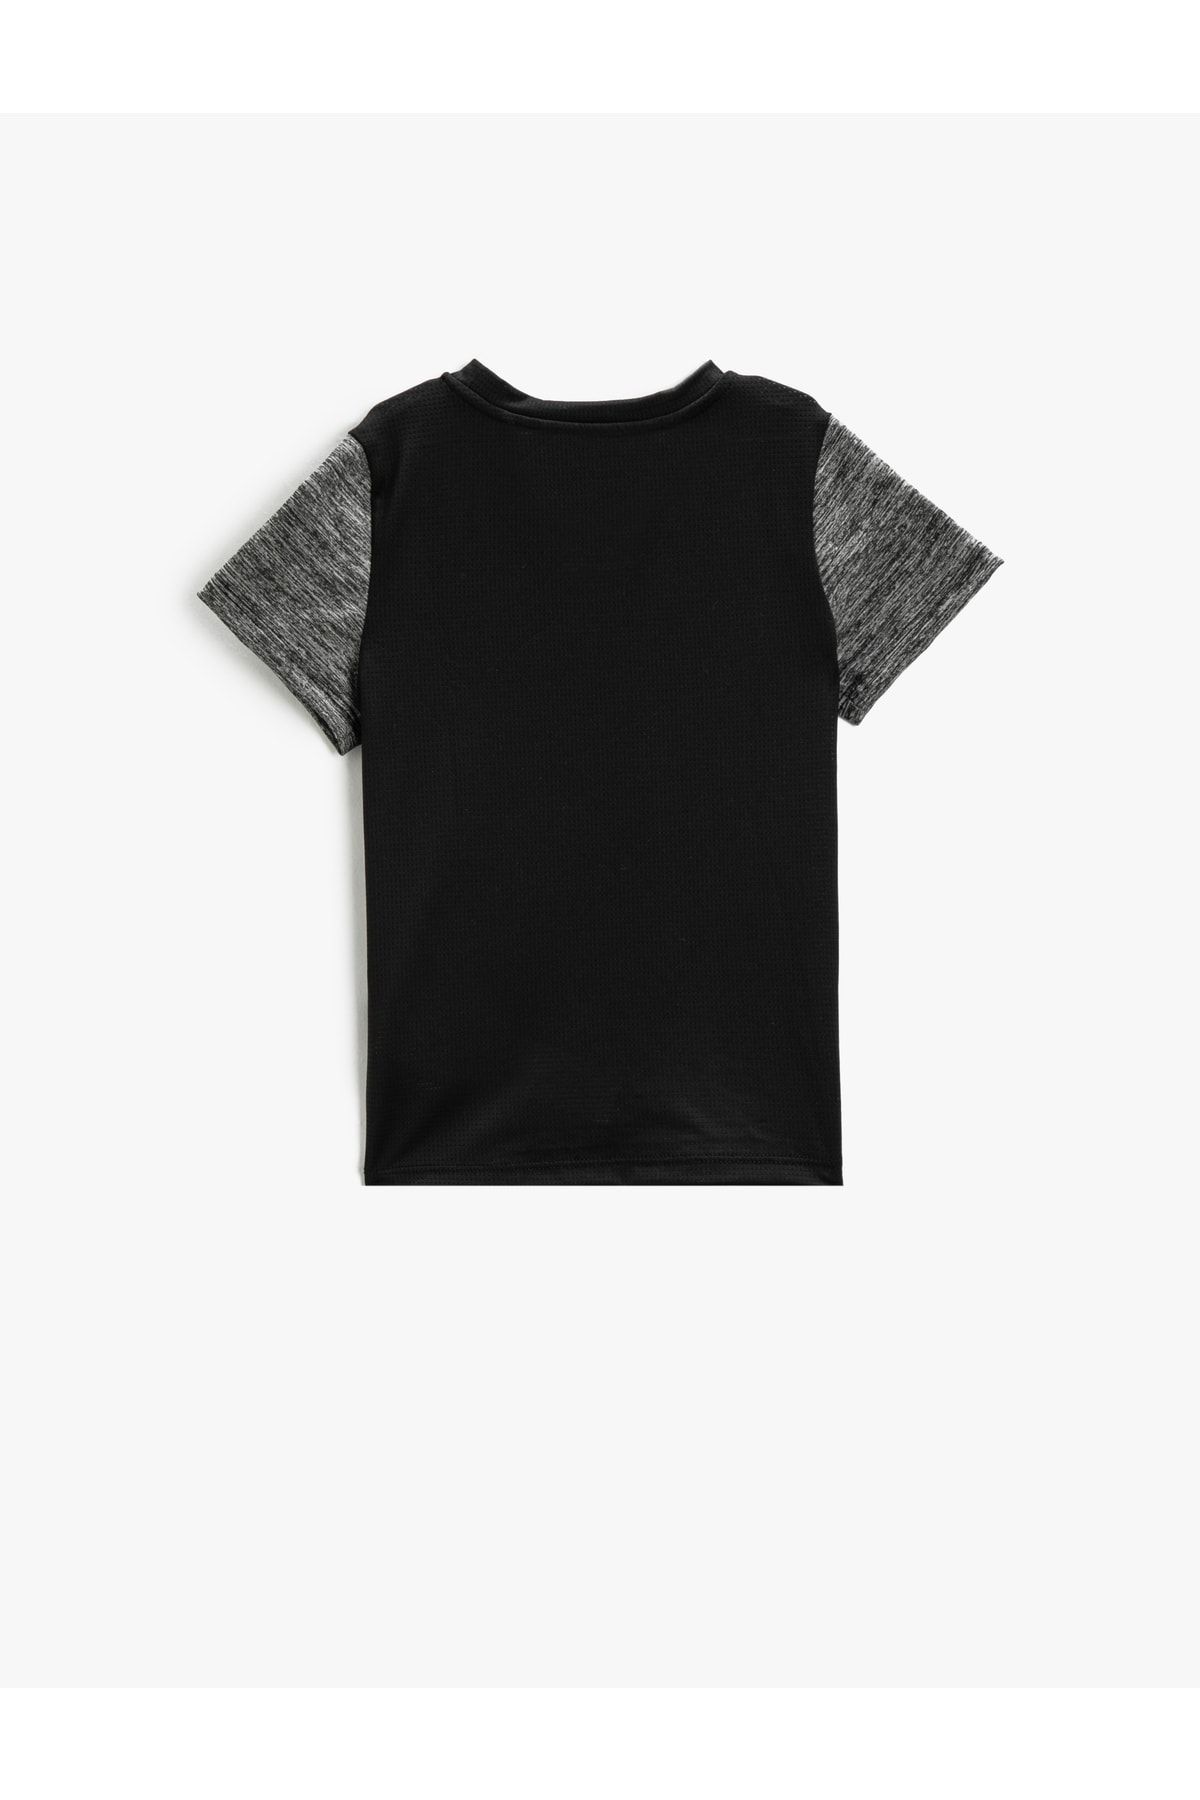 Koton یقه خدمه تی شرت آستین کوتاه چاپ شده